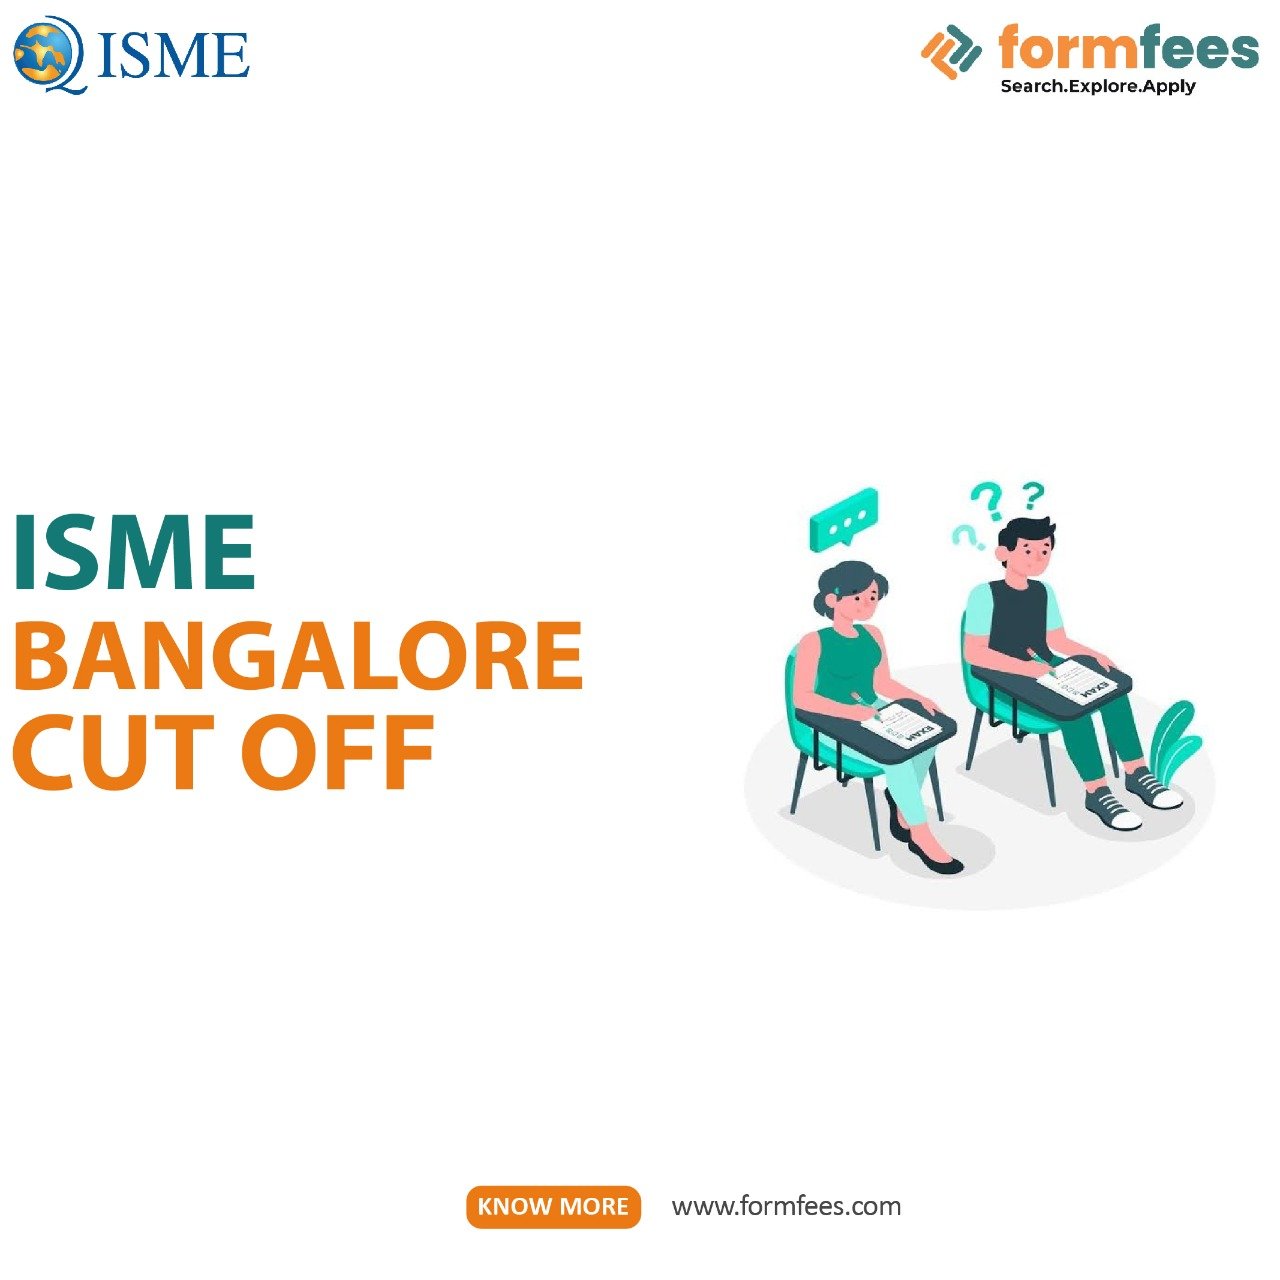 ISME Bangalore Cut Off